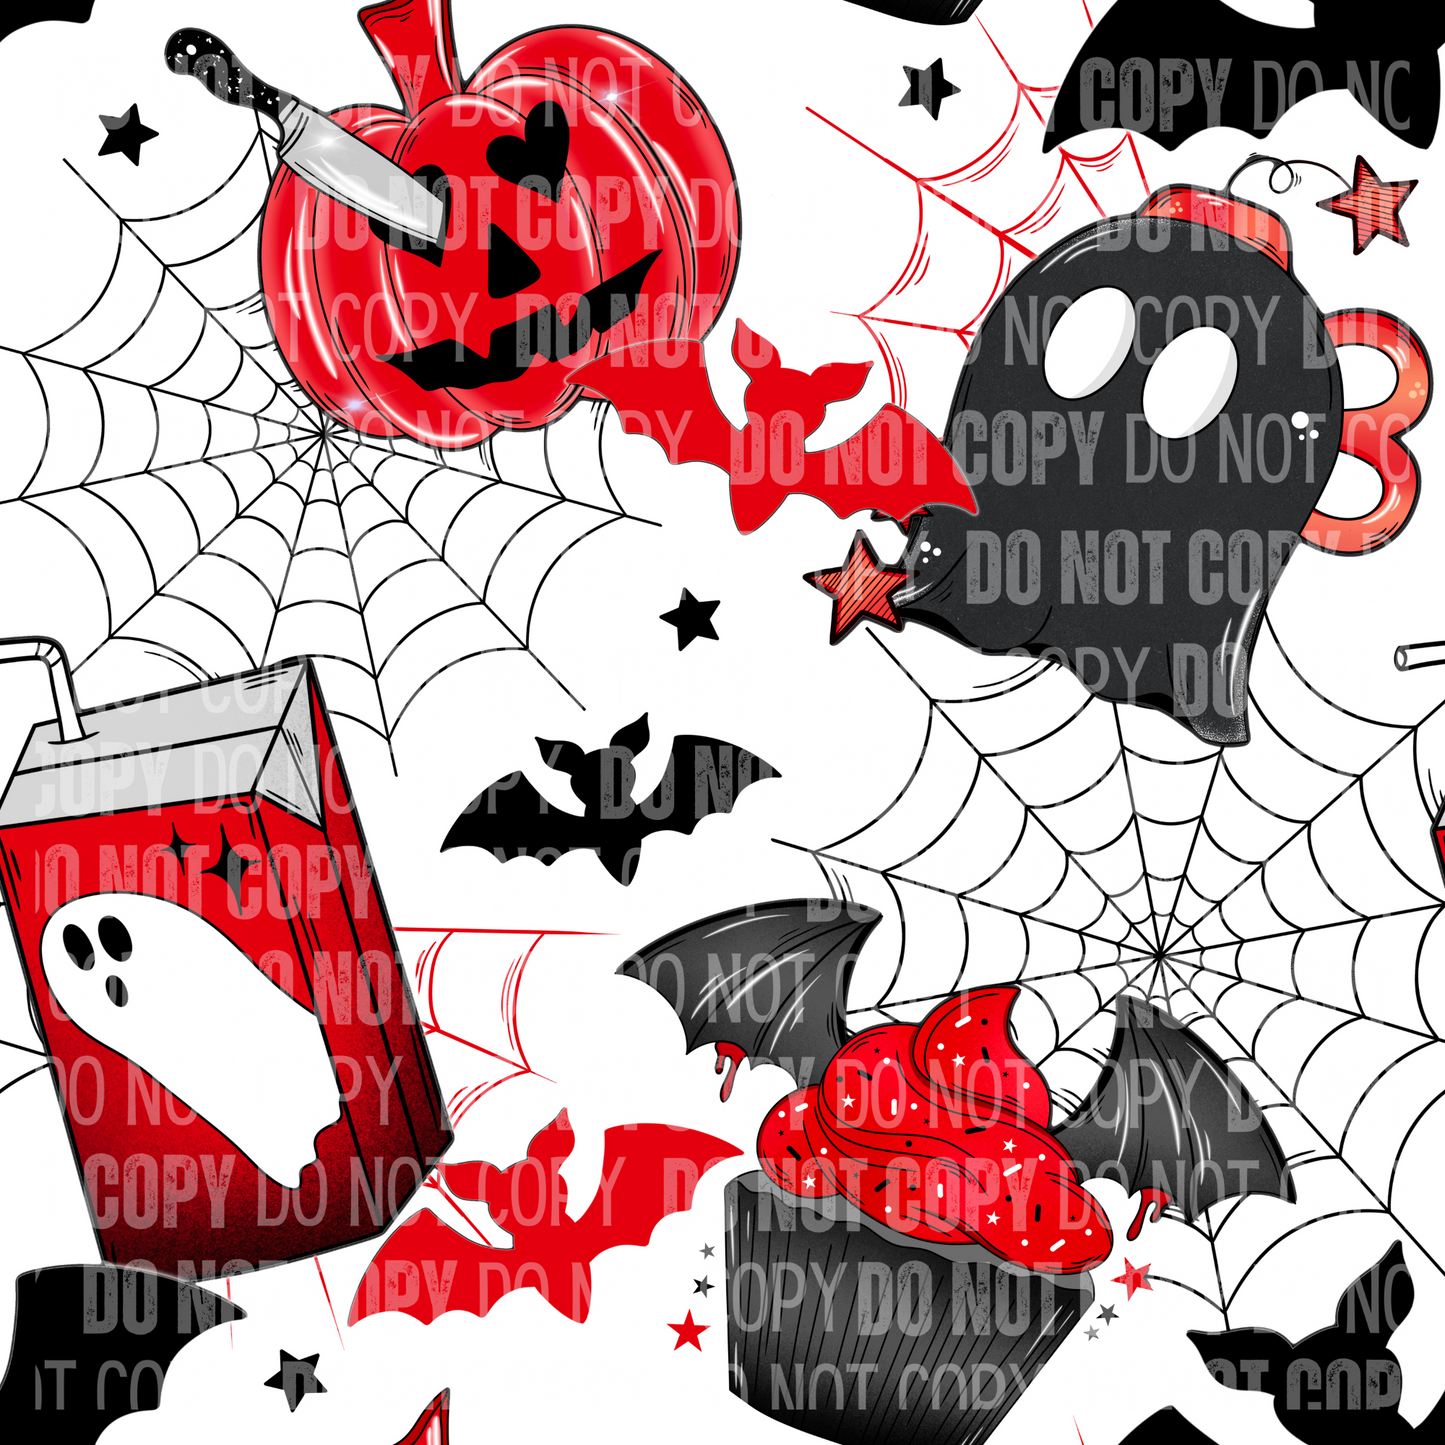 Spooky Doodles - Opaque Vinyl Sheet